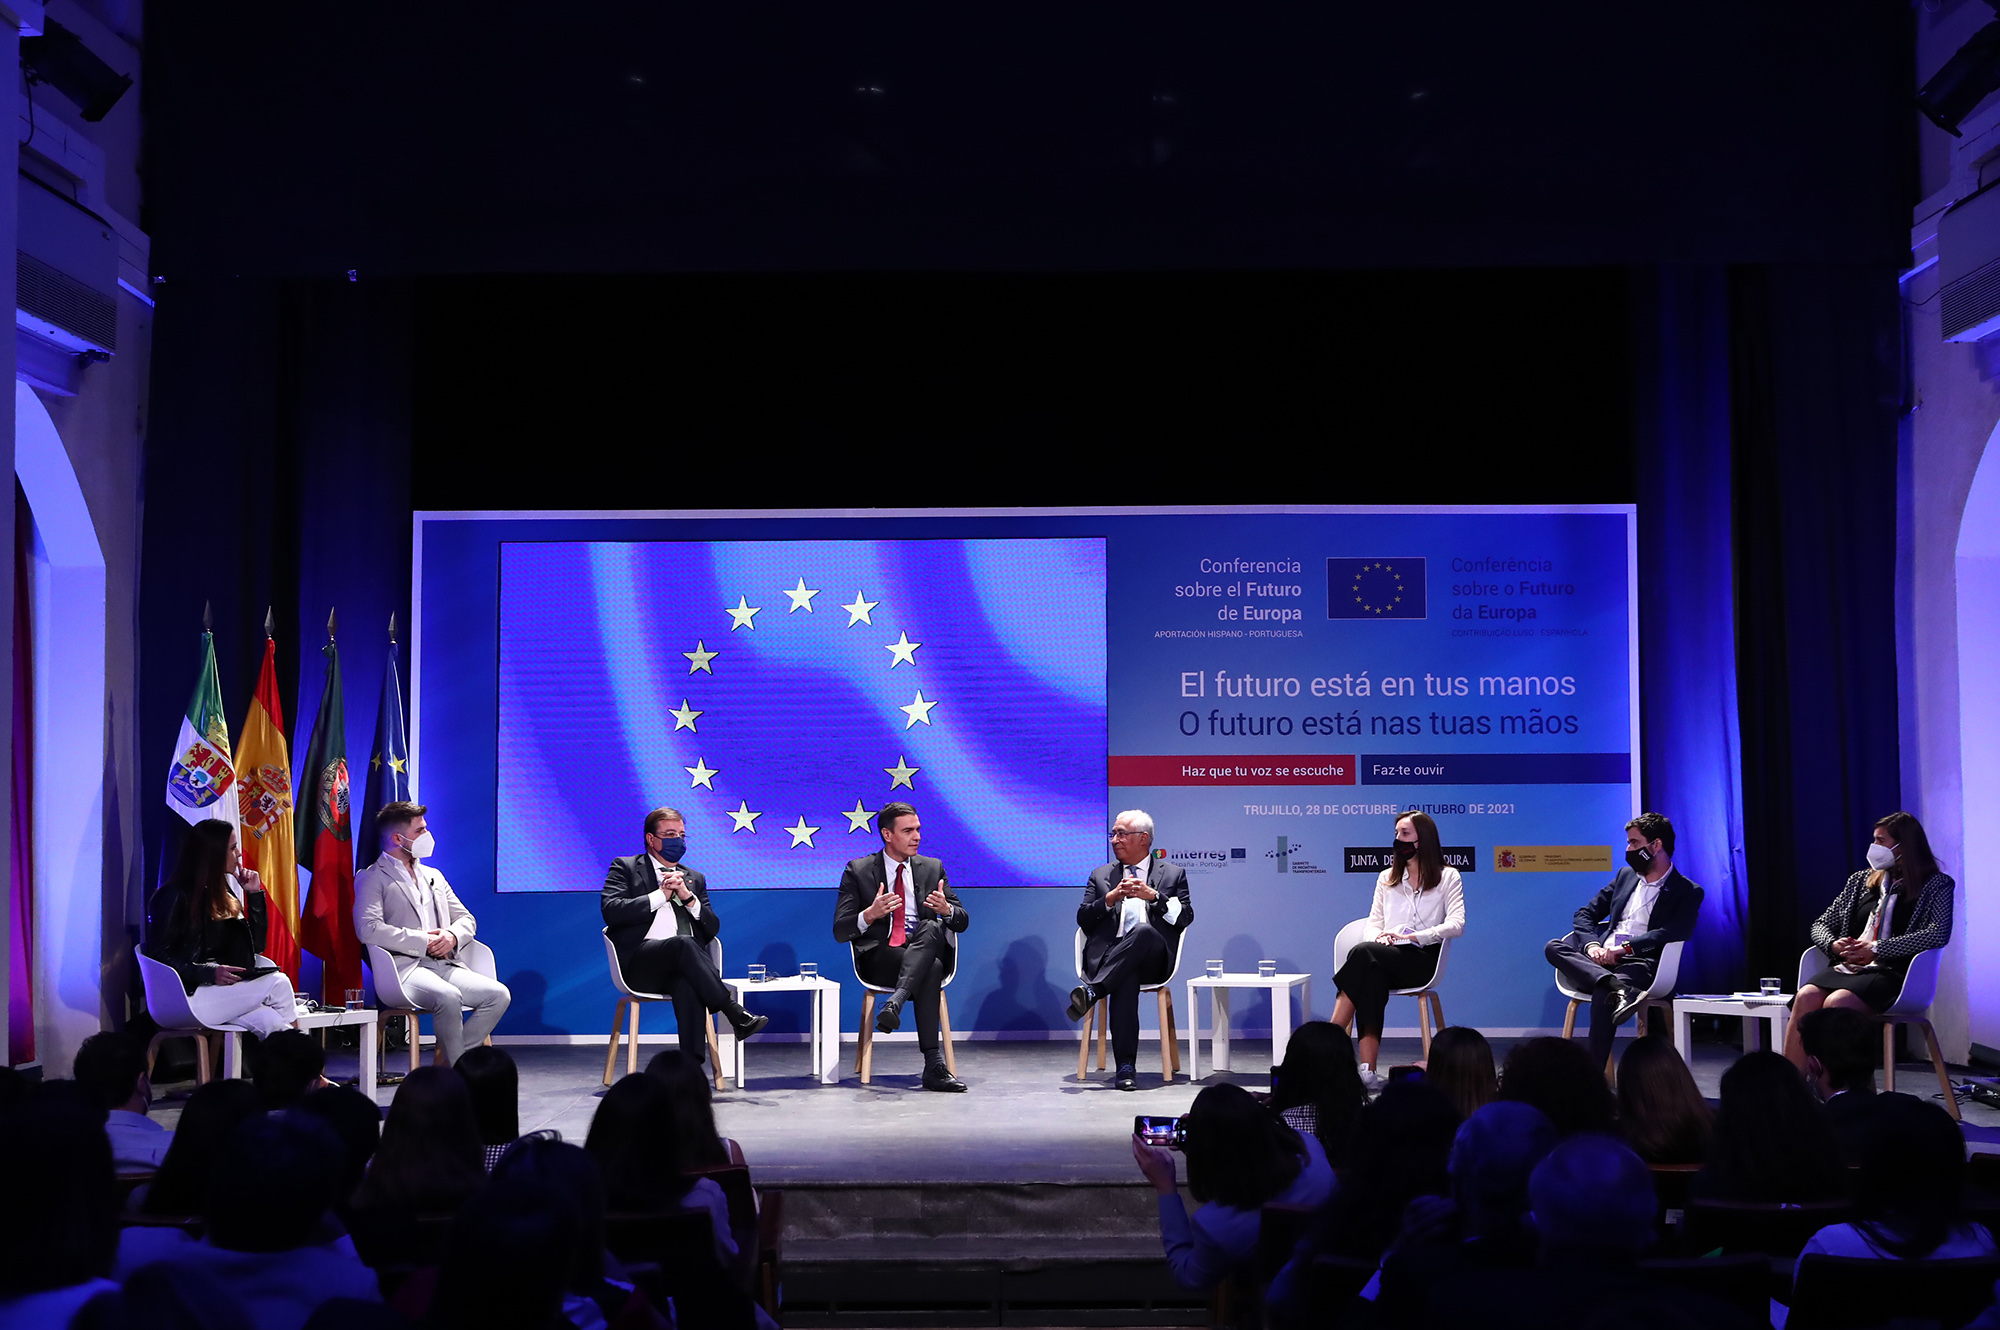 Encuentro con jóvenes españoles y portugueses para el futuro de Europa